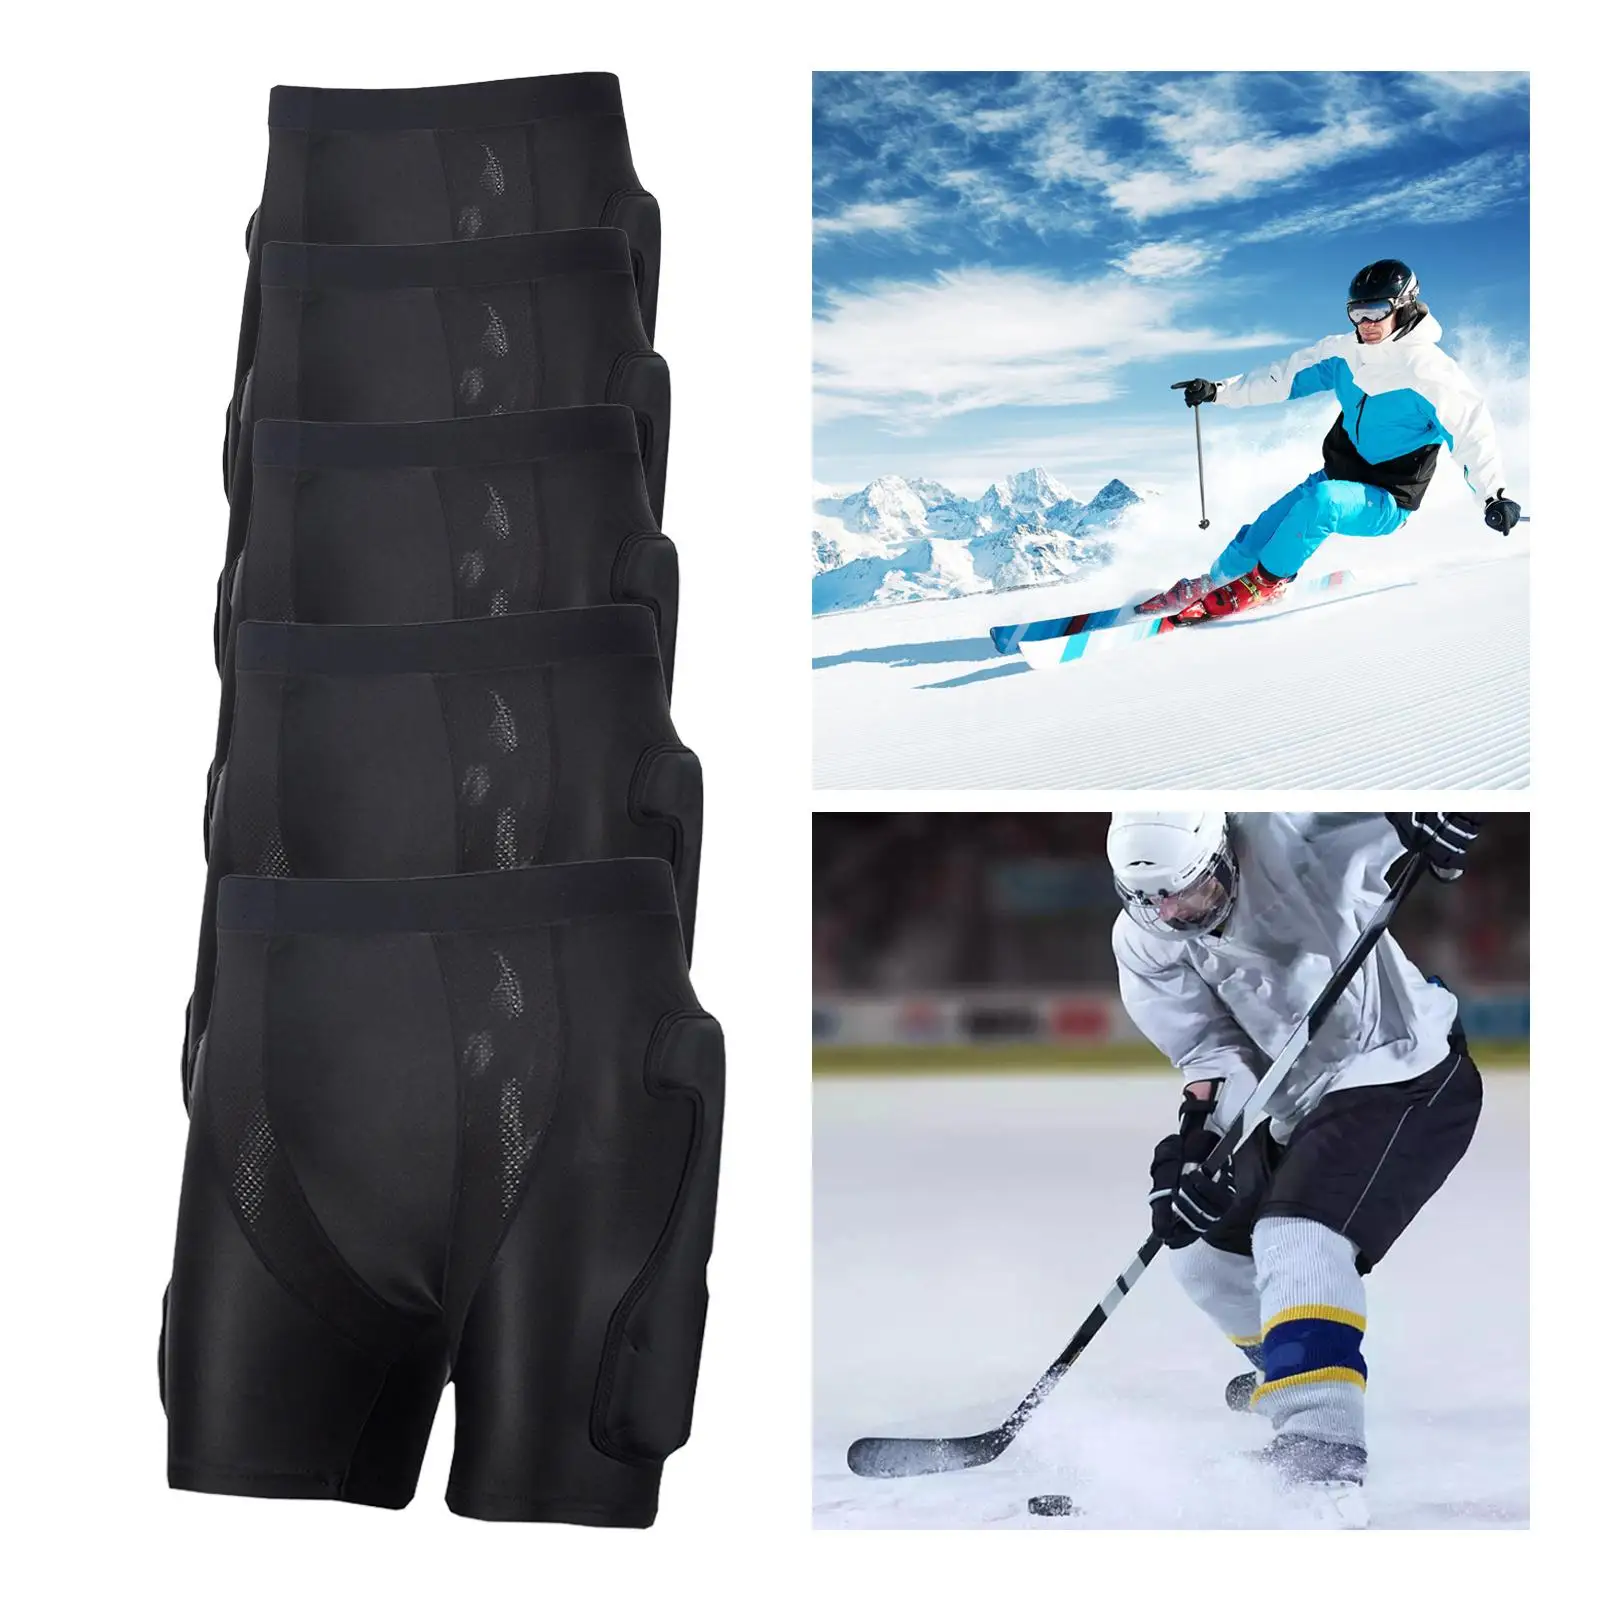 Padded Shorts Skating Butt Pad Guard Multifunction Hip Protective Protector for Snowboard Skating Outdoor Sports Ski Skateboard